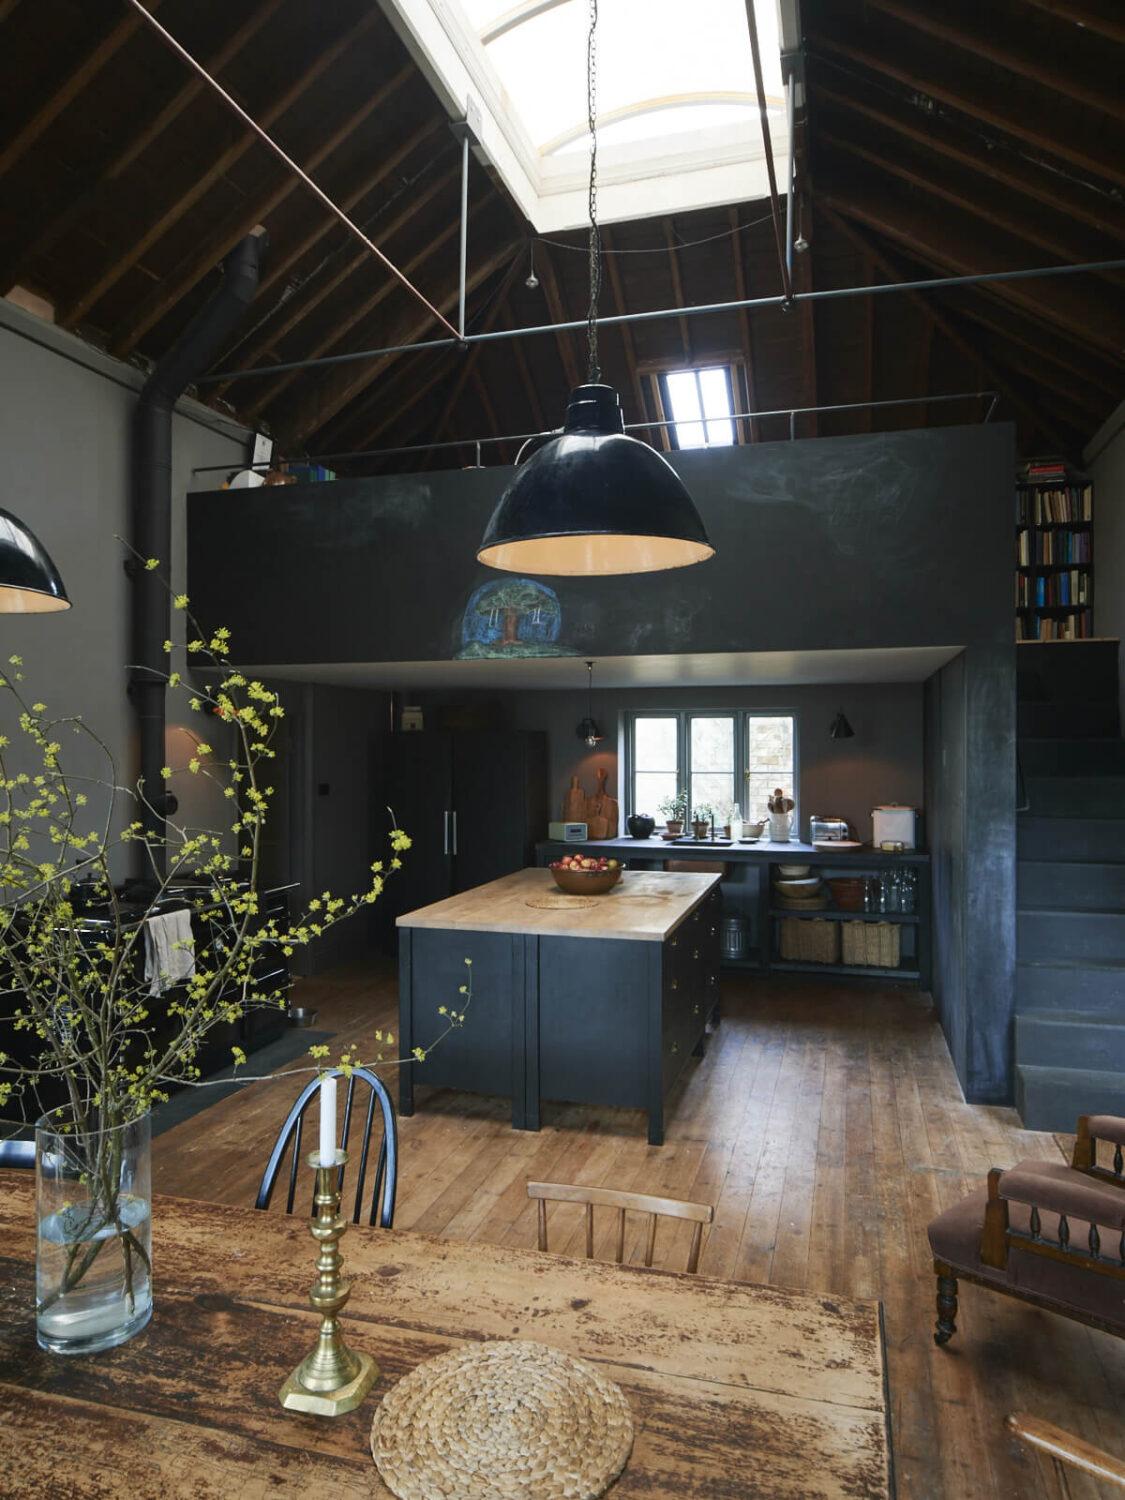 dark-loft-style-kitchen-wooden-floor-island-skylight-nordroom